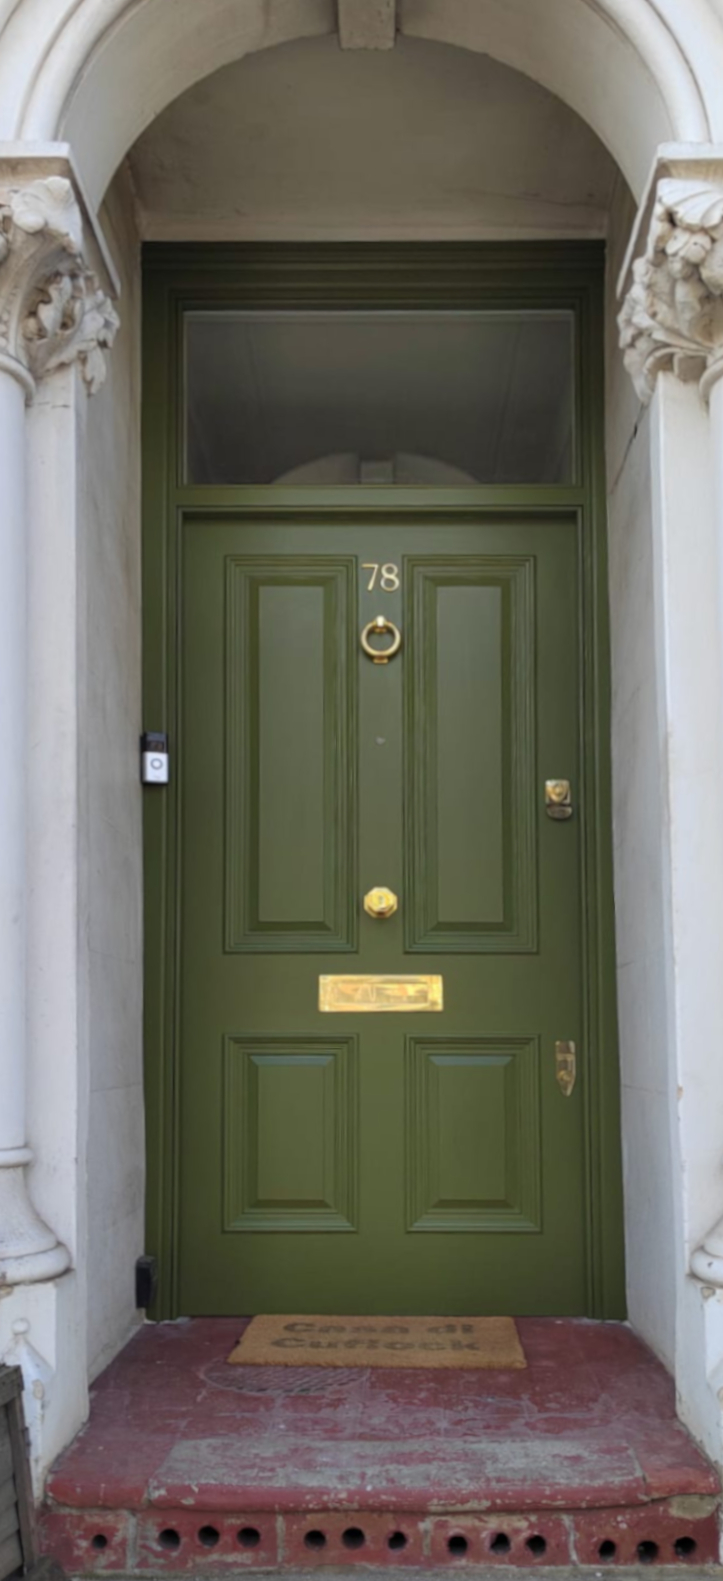 Victorian front door in London